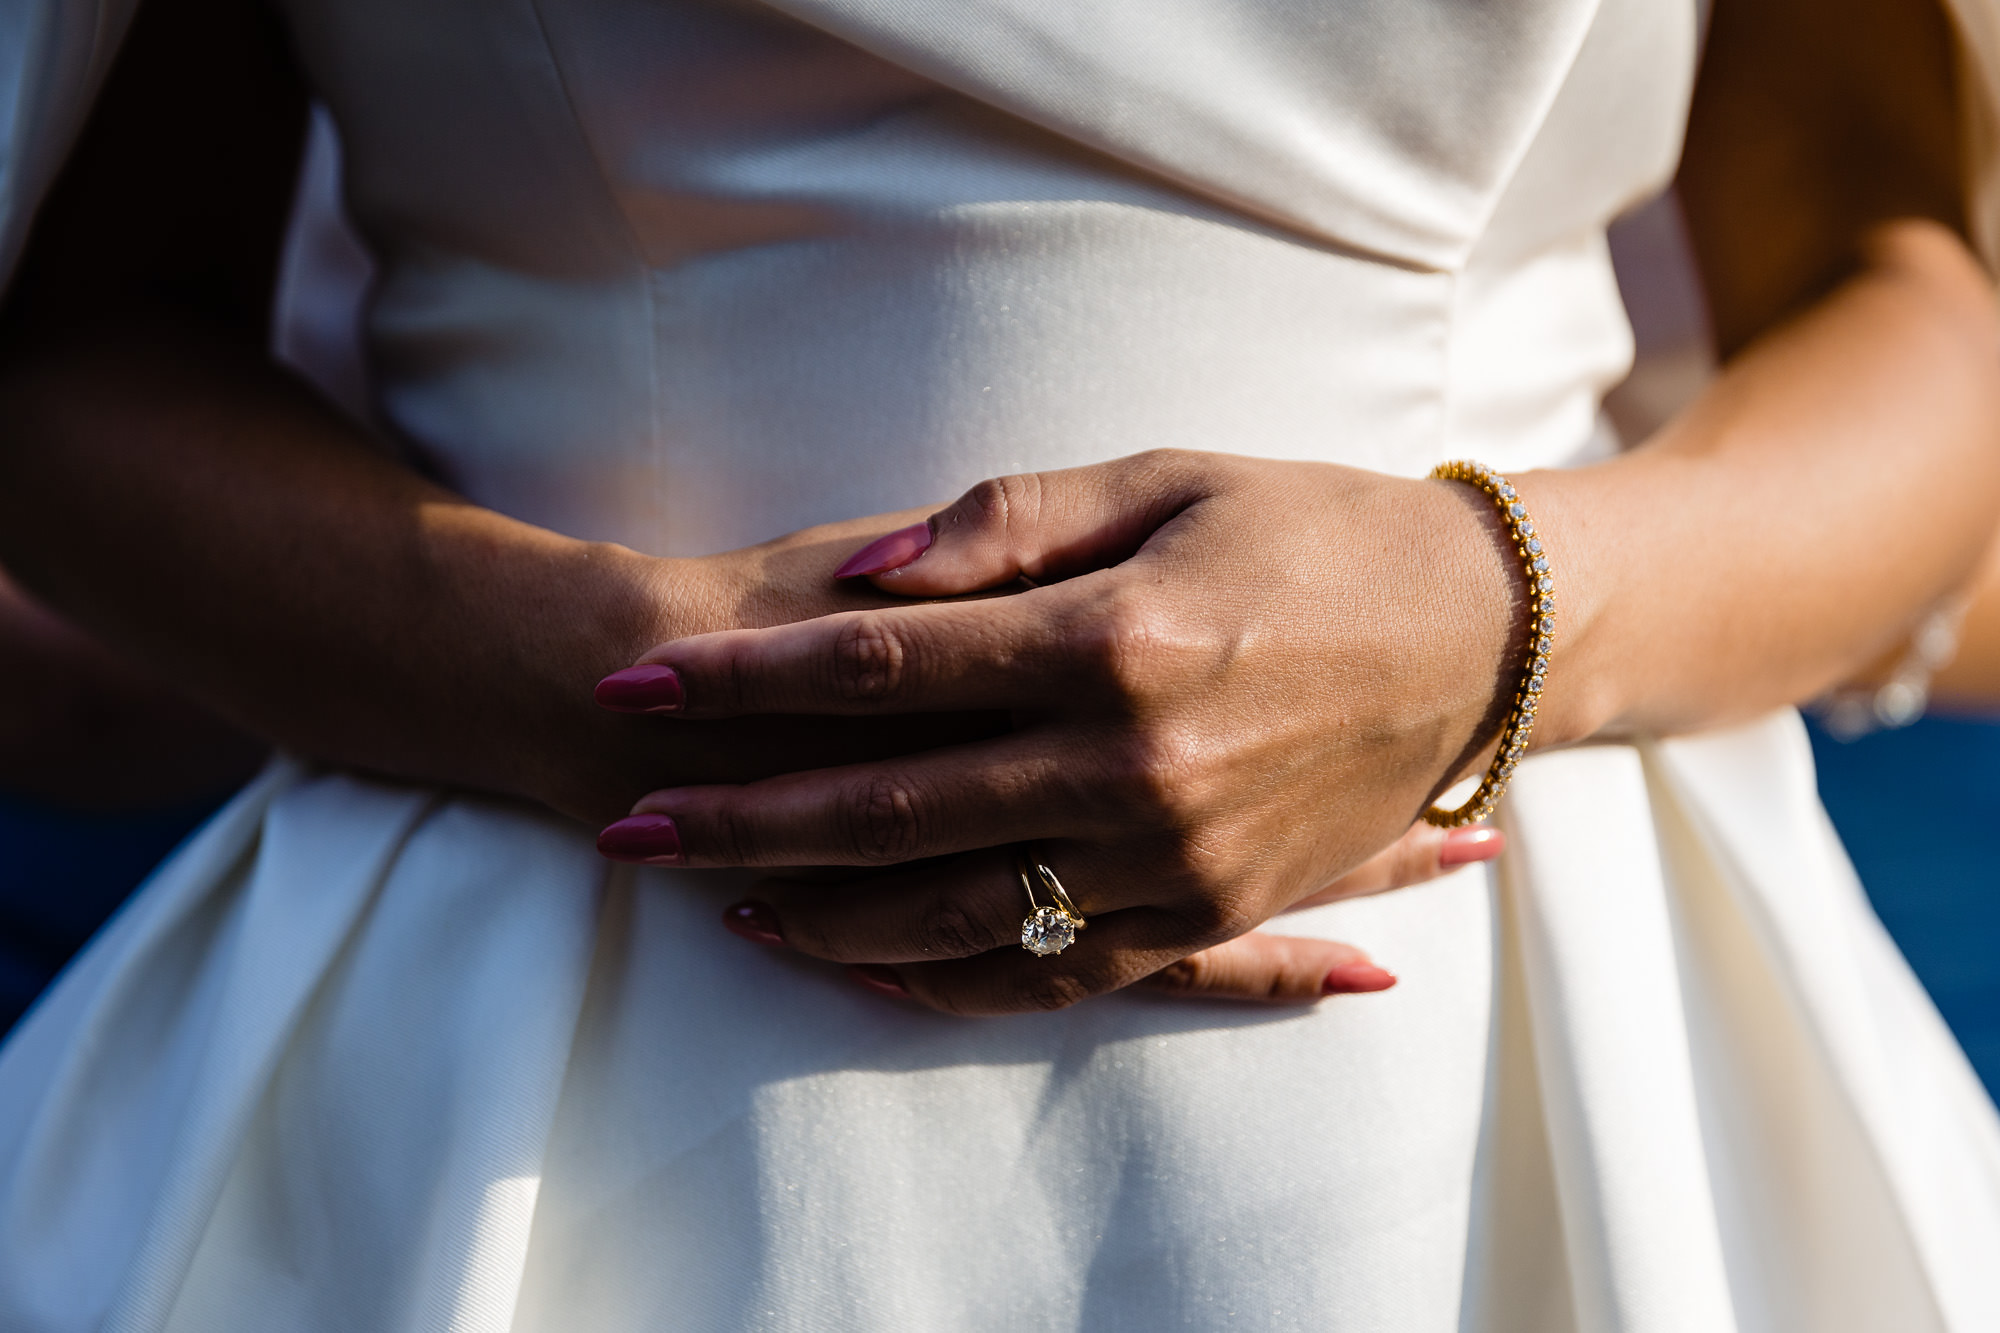 The bride's hands lit in golden light.